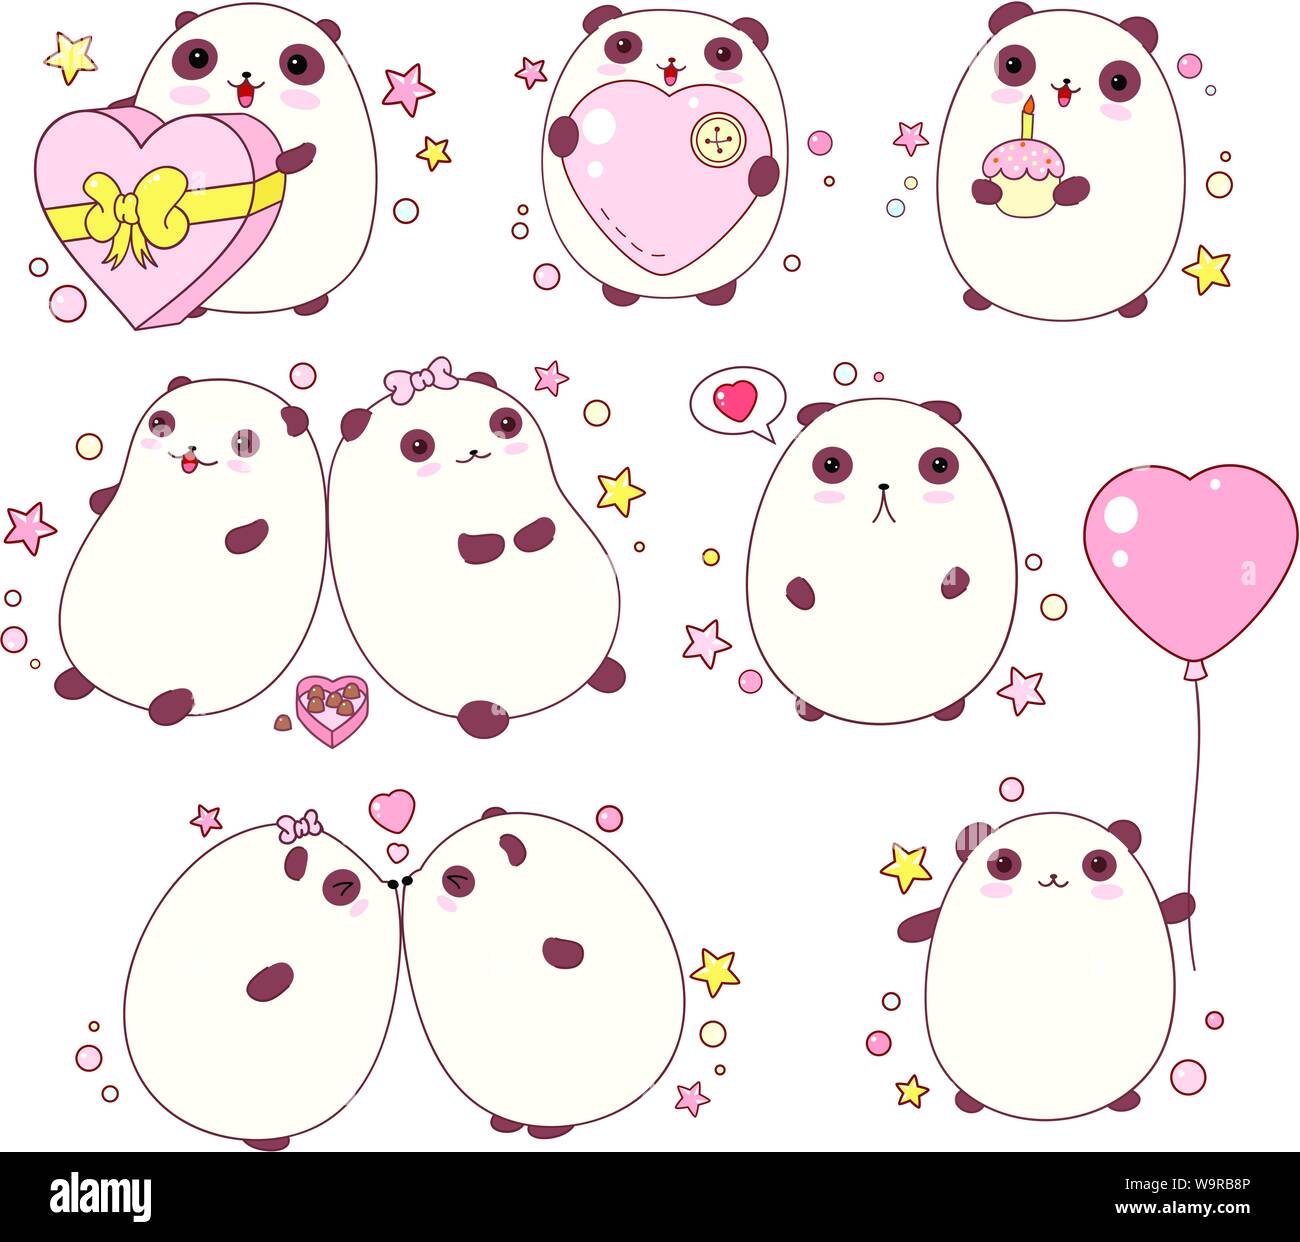 Collection d'adorables pandas Saint-Valentin avec différentes émotions dans le style kawaii. Spe8 Illustration de Vecteur